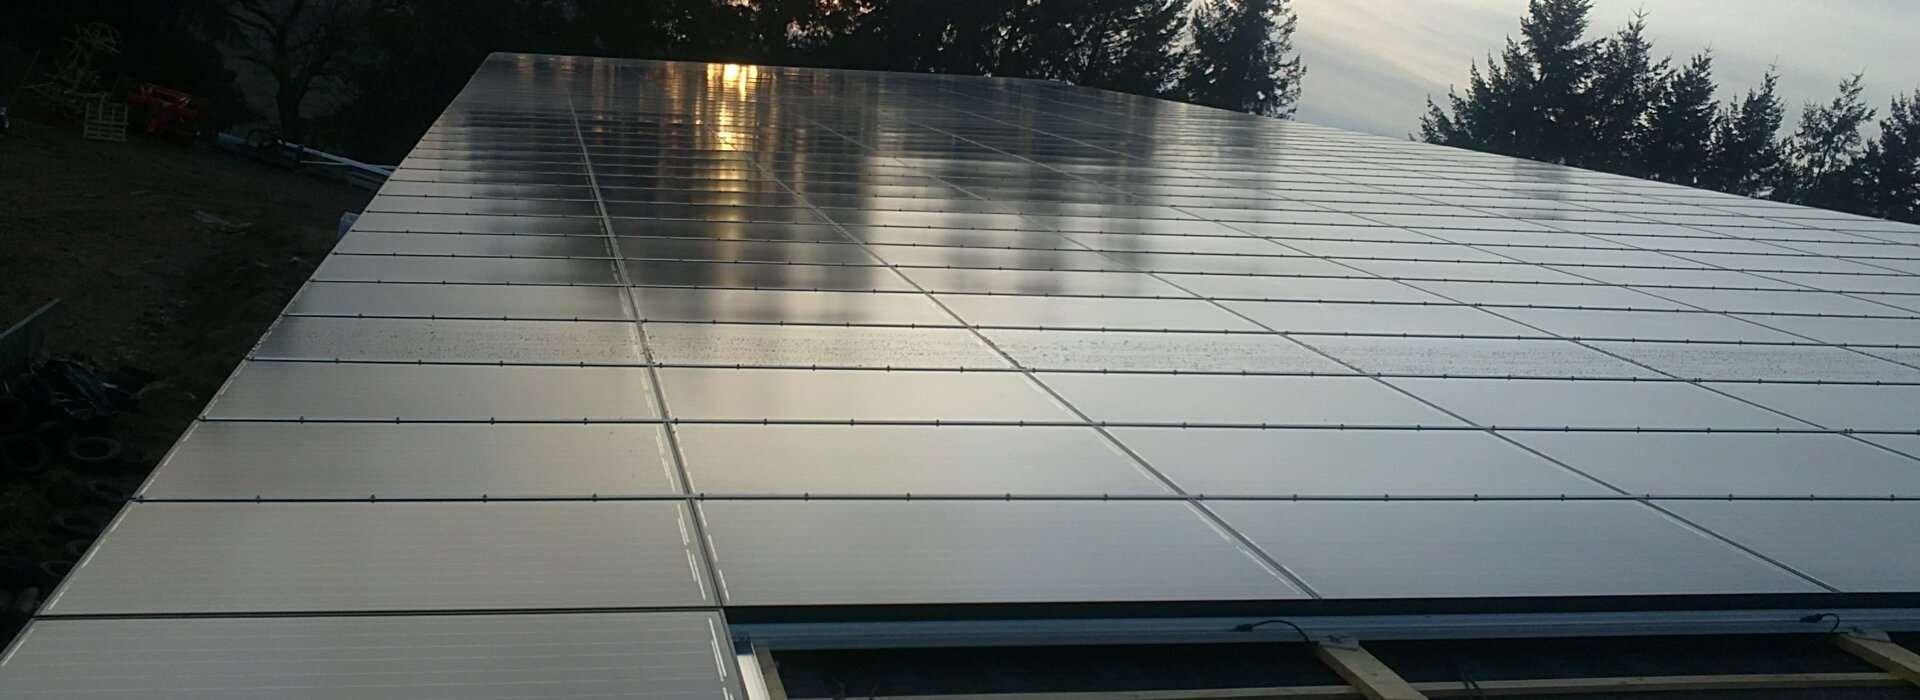 Notre mission est de faciliter la réalisation de centrales solaires photovoltaïques